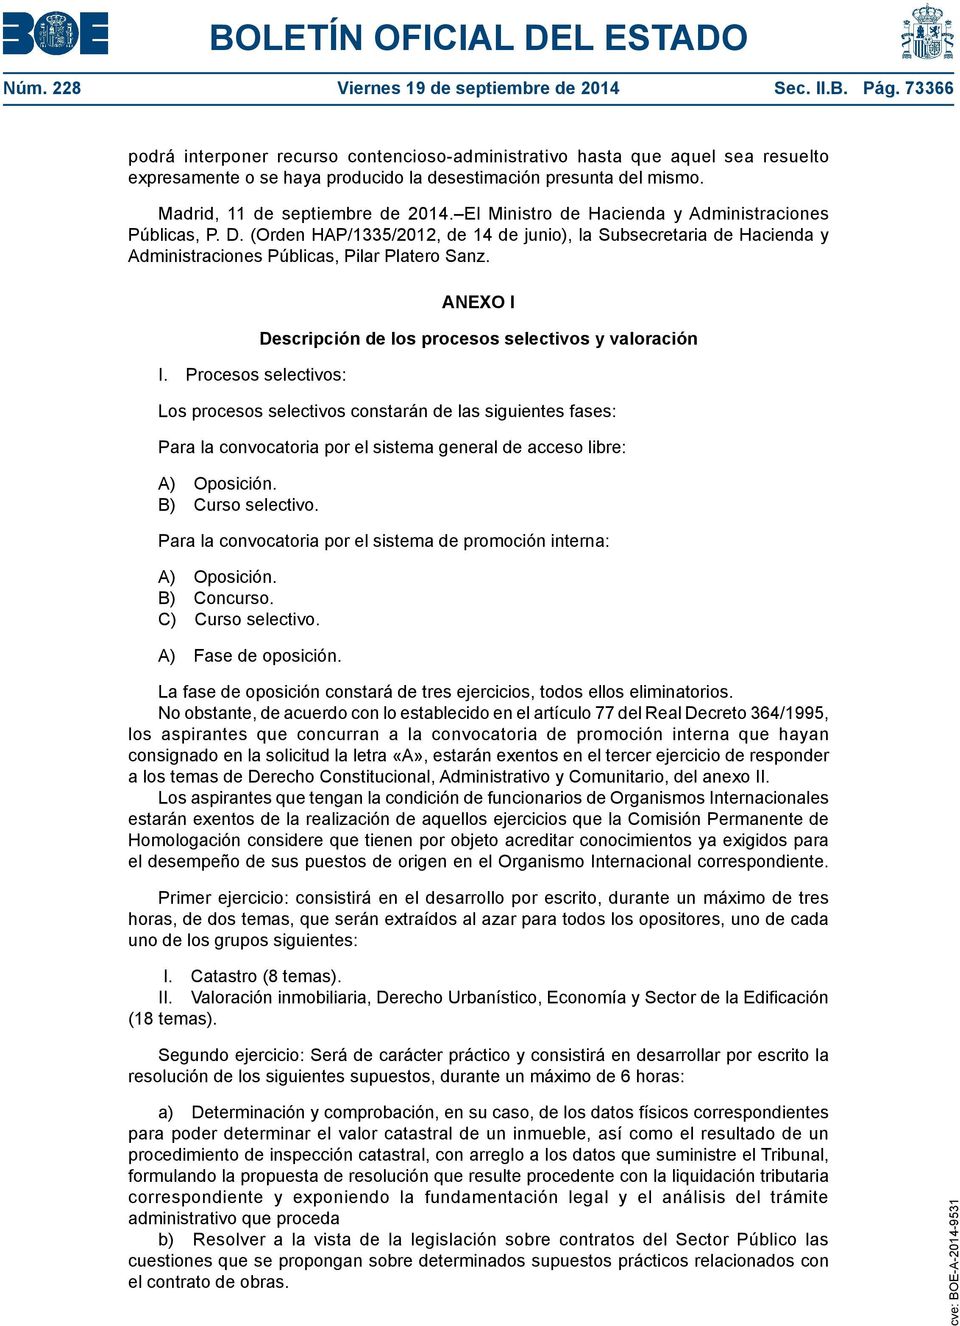 El Ministro de Hacienda y Administraciones Públicas, P. D. (Orden HAP/1335/2012, de 14 de junio), la Subsecretaria de Hacienda y Administraciones Públicas, Pilar Platero Sanz. I.